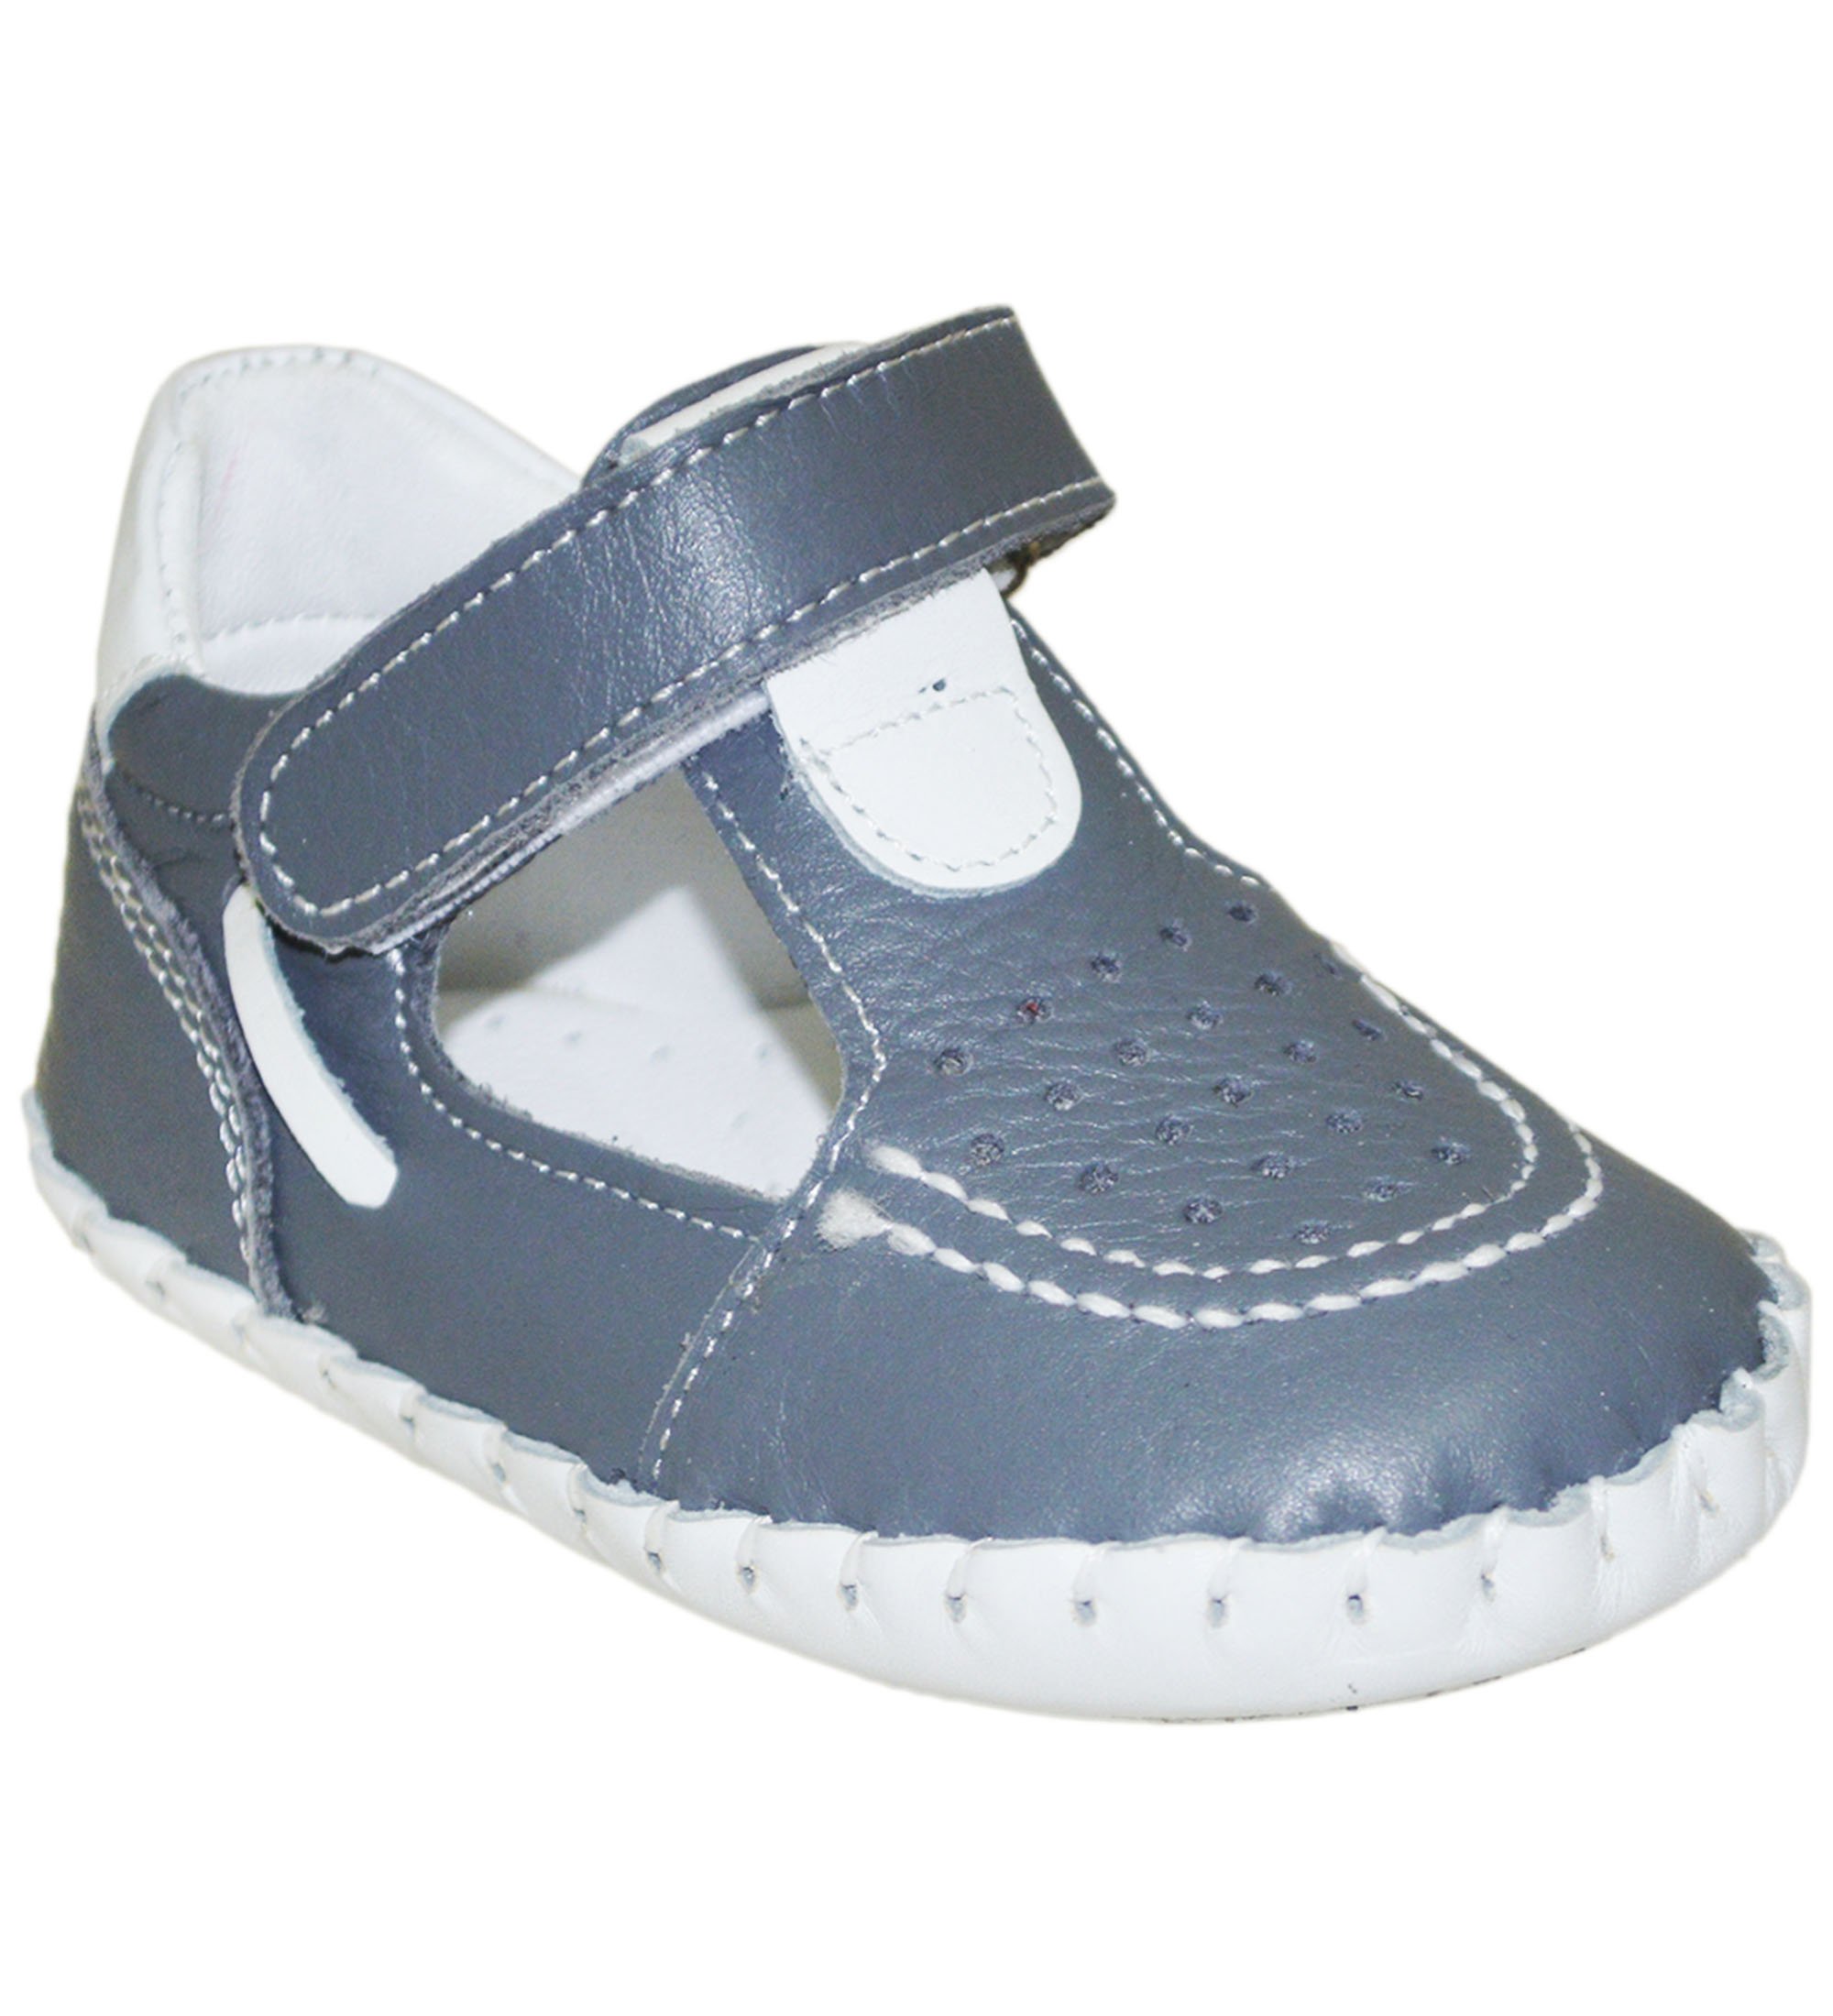 Yeni Doğan Çocuk Sandalet - Gri/Beyaz